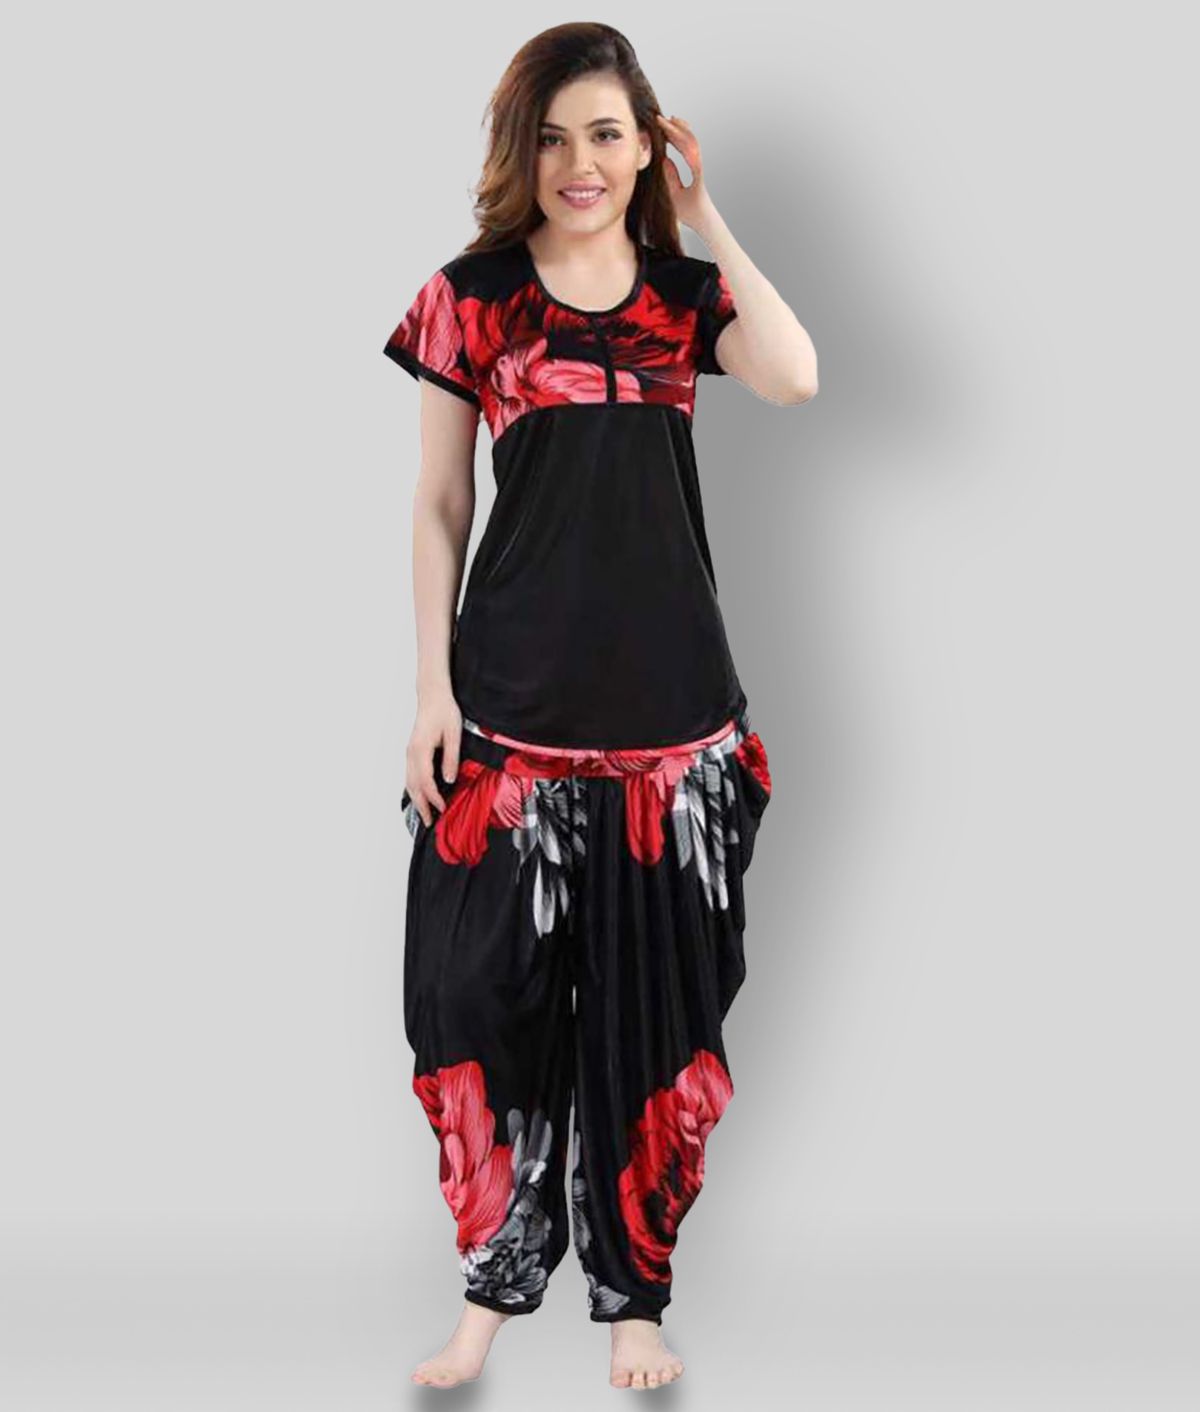     			Gangomi - Black Satin Women's Nightwear Nightsuit Sets